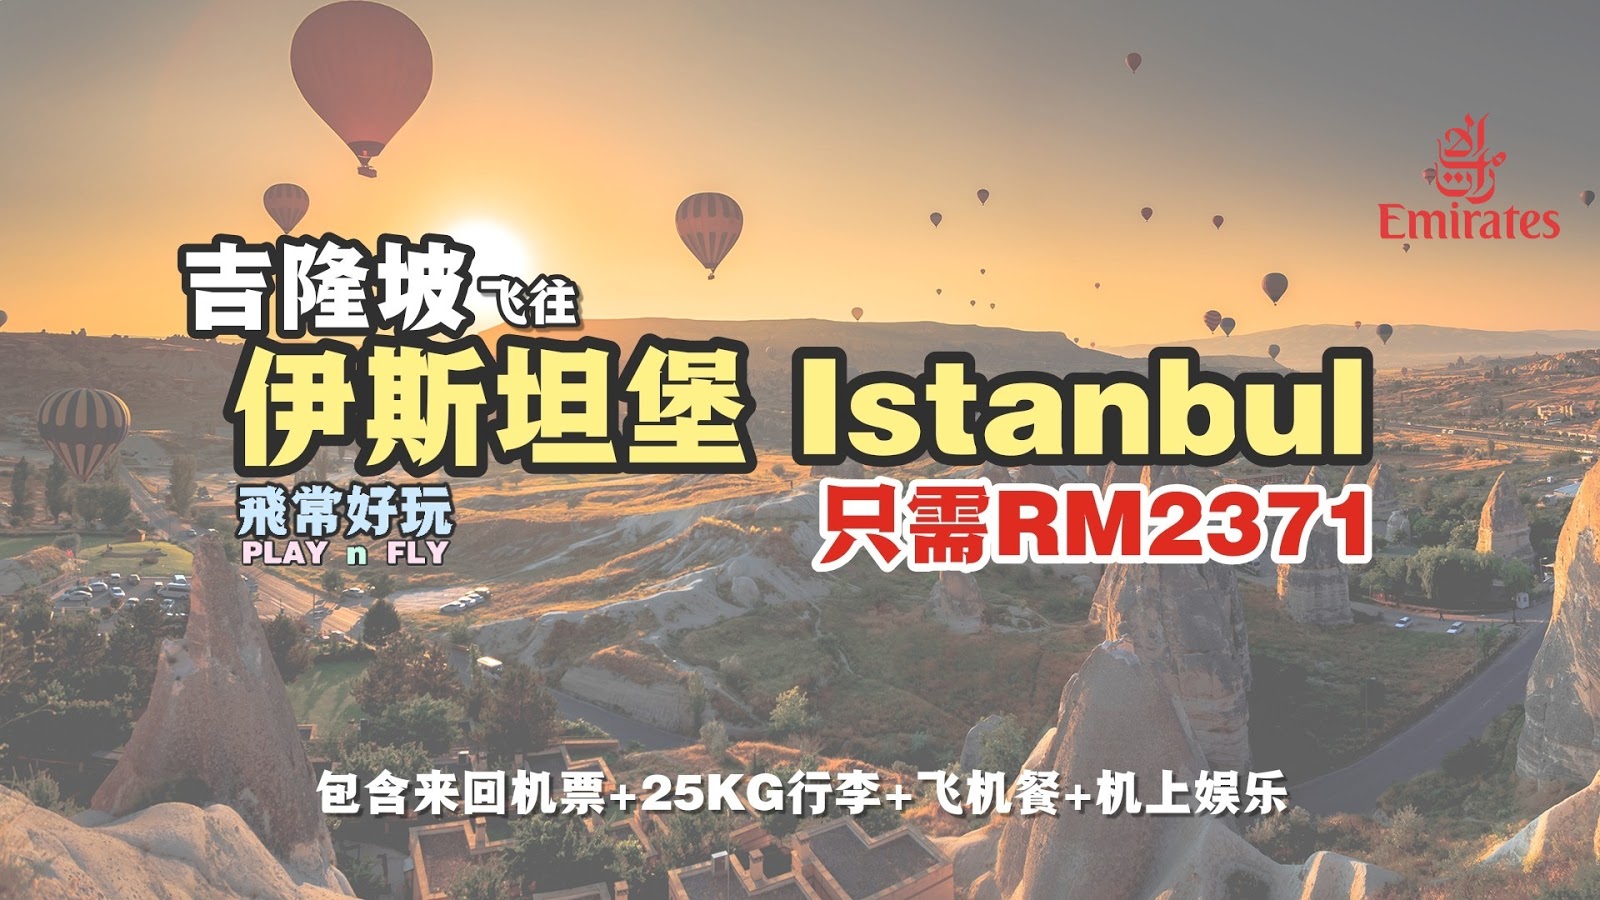 【旅游资讯】EMIRATES飞往土耳其ISTANBUL只需RM2,371!!